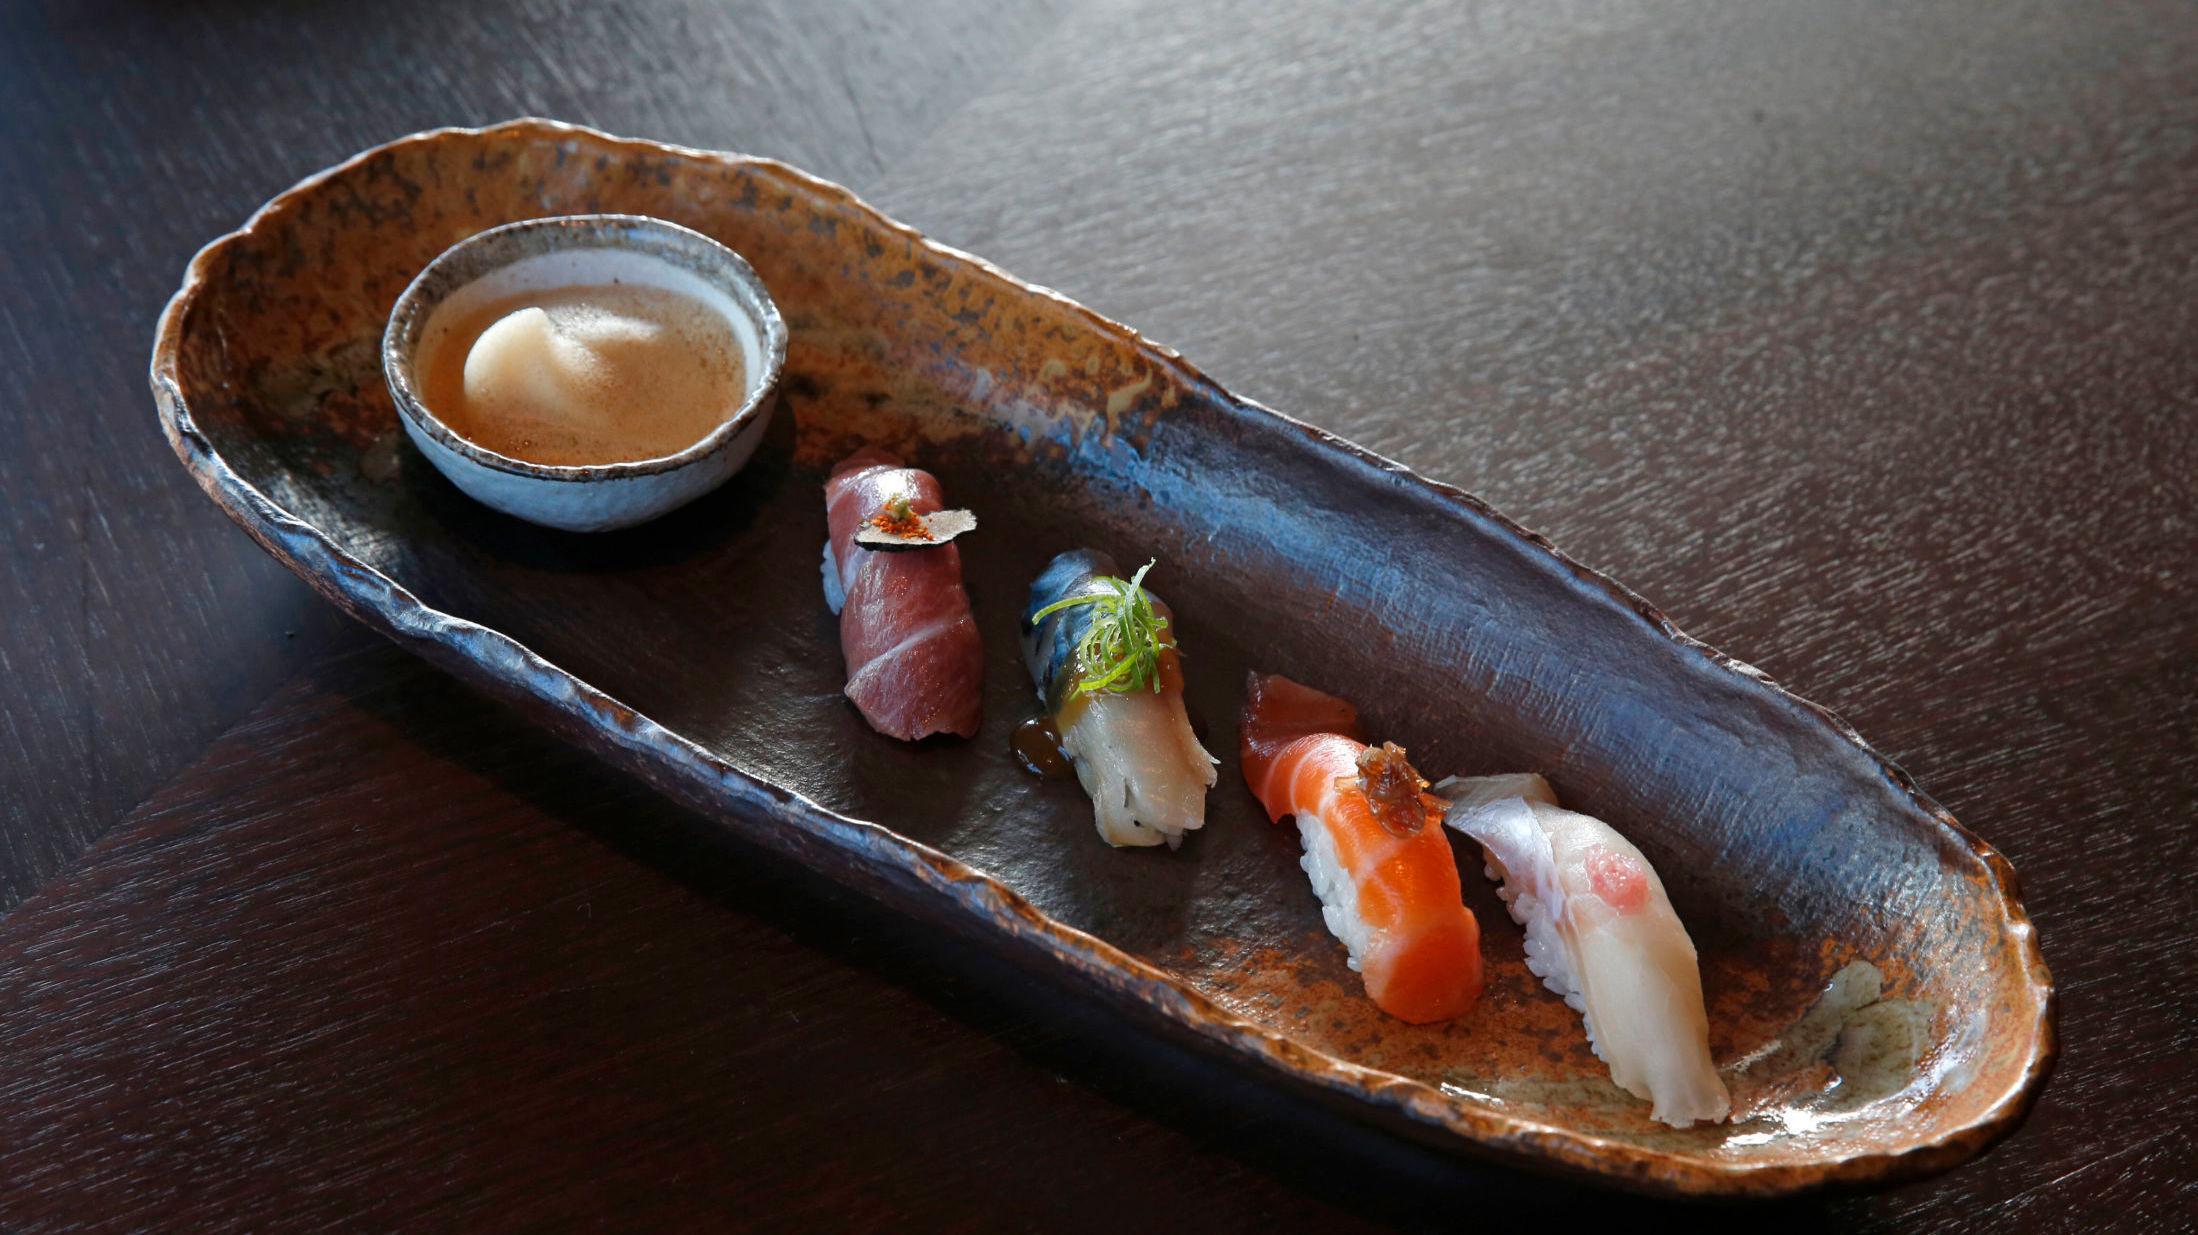 FINE DINING: Nodee Sky serverer gjestene retter inspirert av tradisjonell japansk mat, også kalt Wa-shoku. Her er biter av nigiri. Foto: Trond Solberg/VG